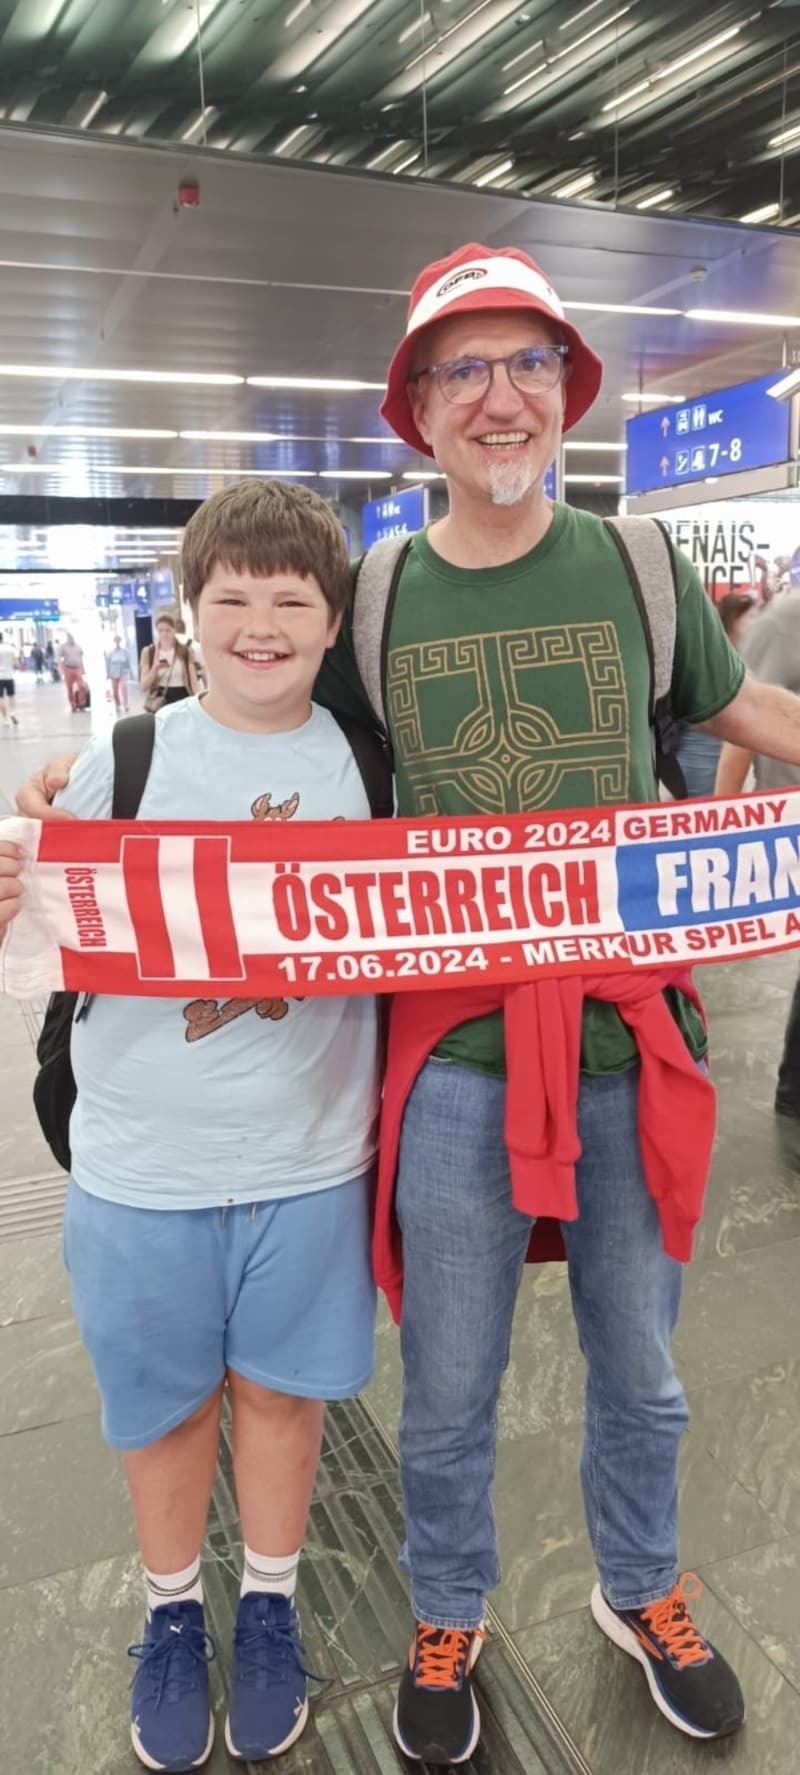 Dienstag Nachmittag kamen Papa und Sohn wieder am Hauptbahnhof an. Als Erinnerung brachten sie einen Schal mit. Diese Reise werden sie ihr ganzes Leben lang nicht mehr vergessen. (Bild: Zur Verfügung gestellt)